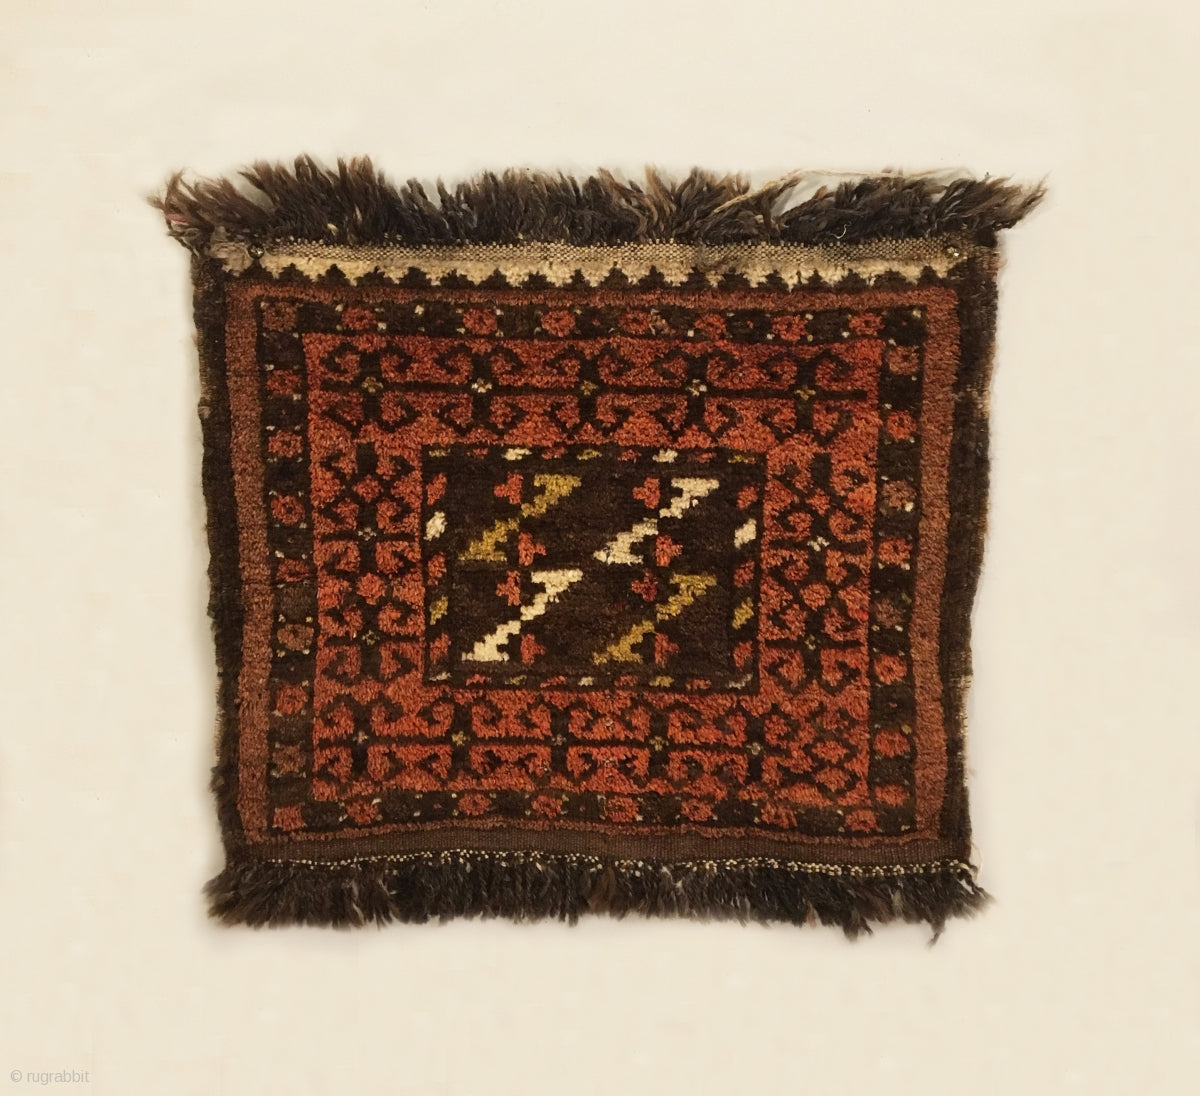 1’6” X 1’9” Antique Central Asian Bagface